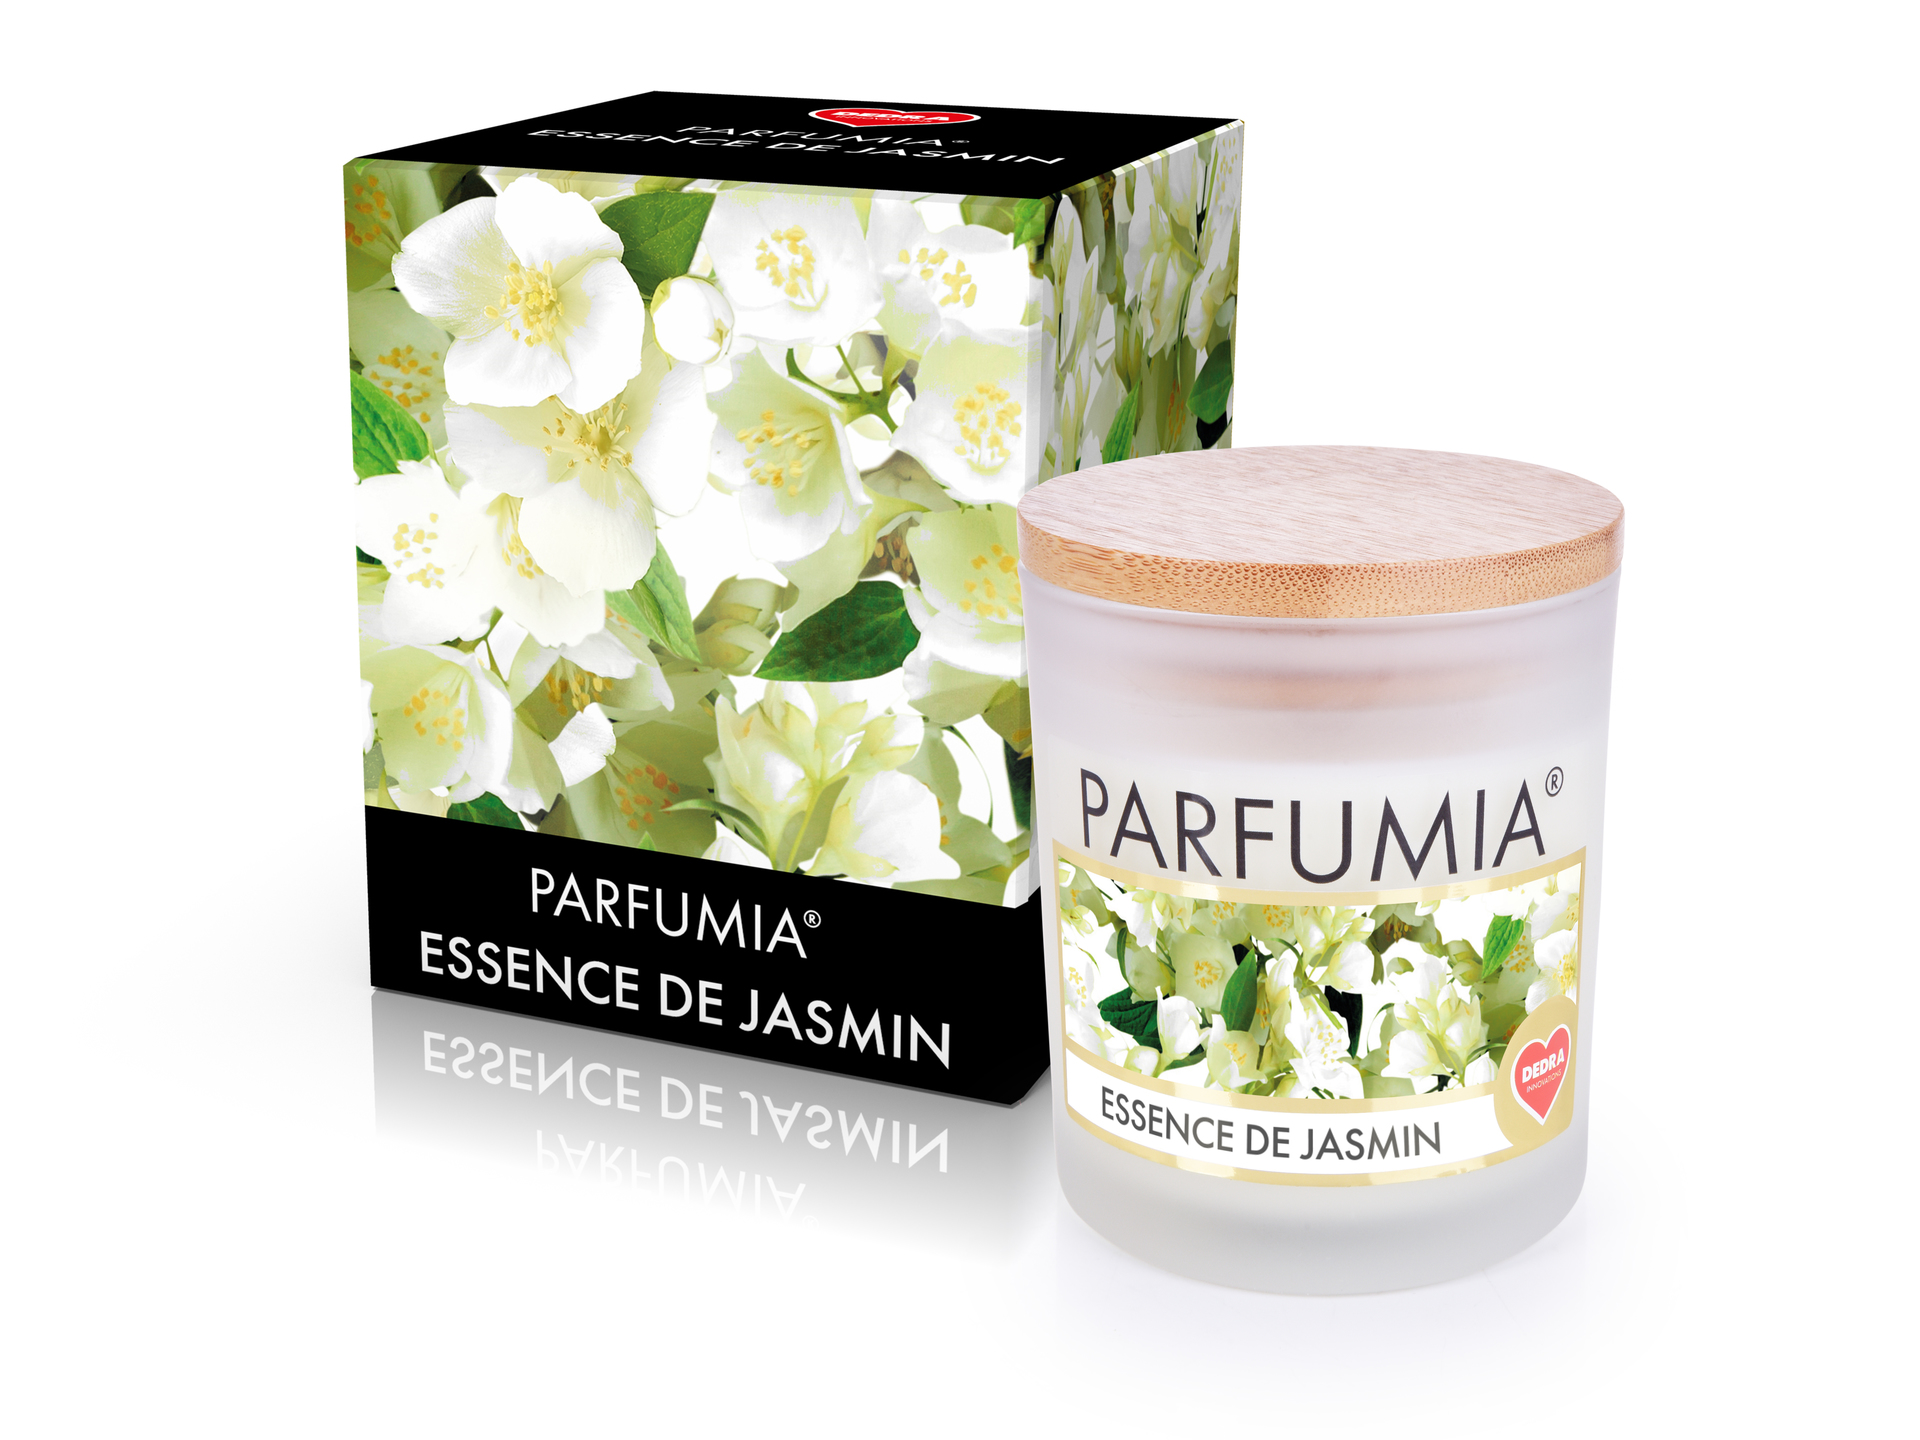 Sójová vonná EKO svíce Parfumia Essence de jasmin